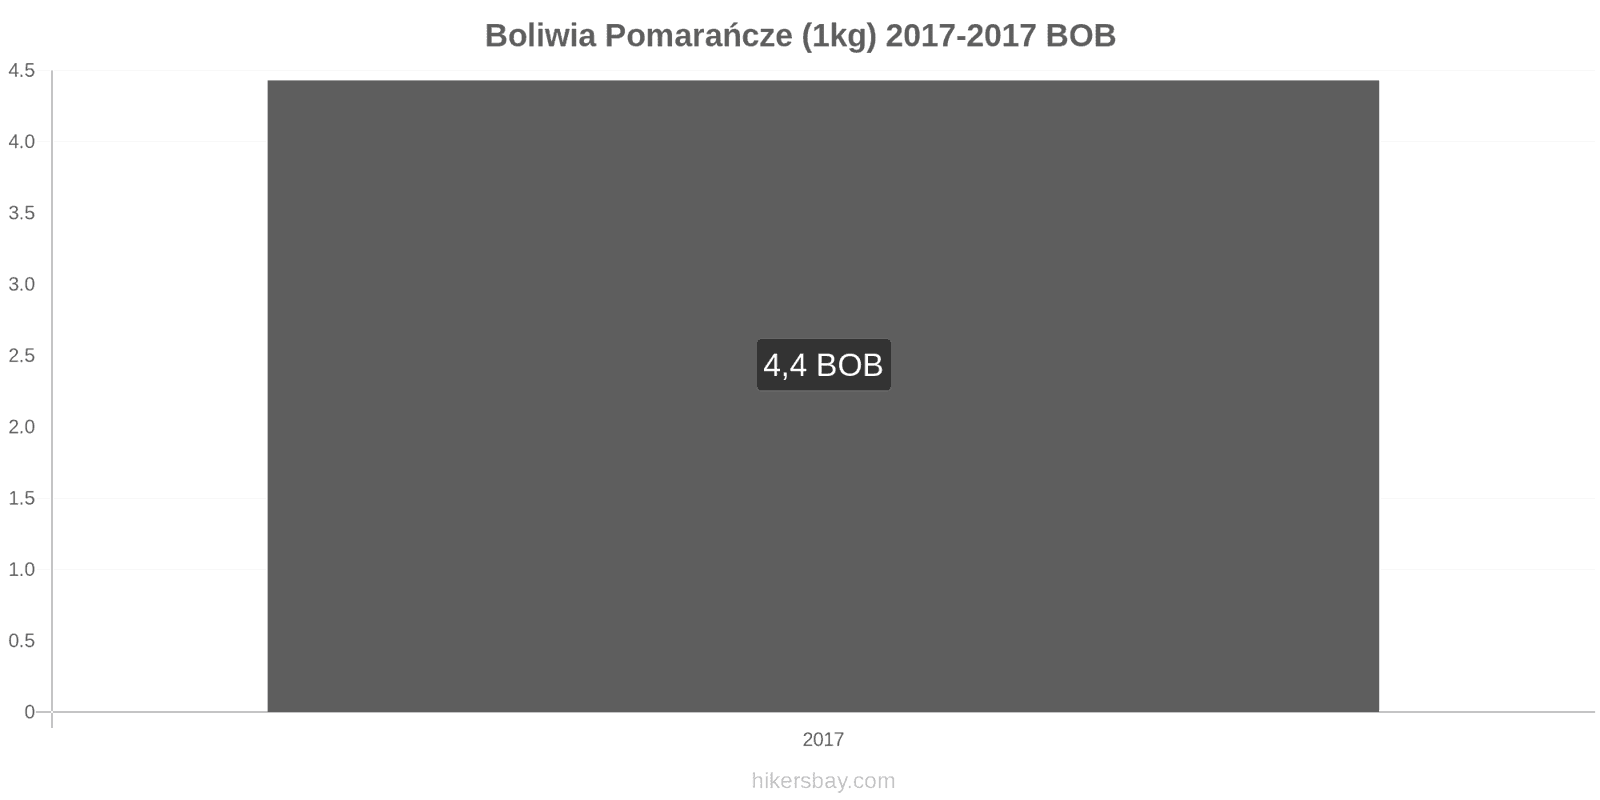 Boliwia zmiany cen Pomarańcze (1kg) hikersbay.com